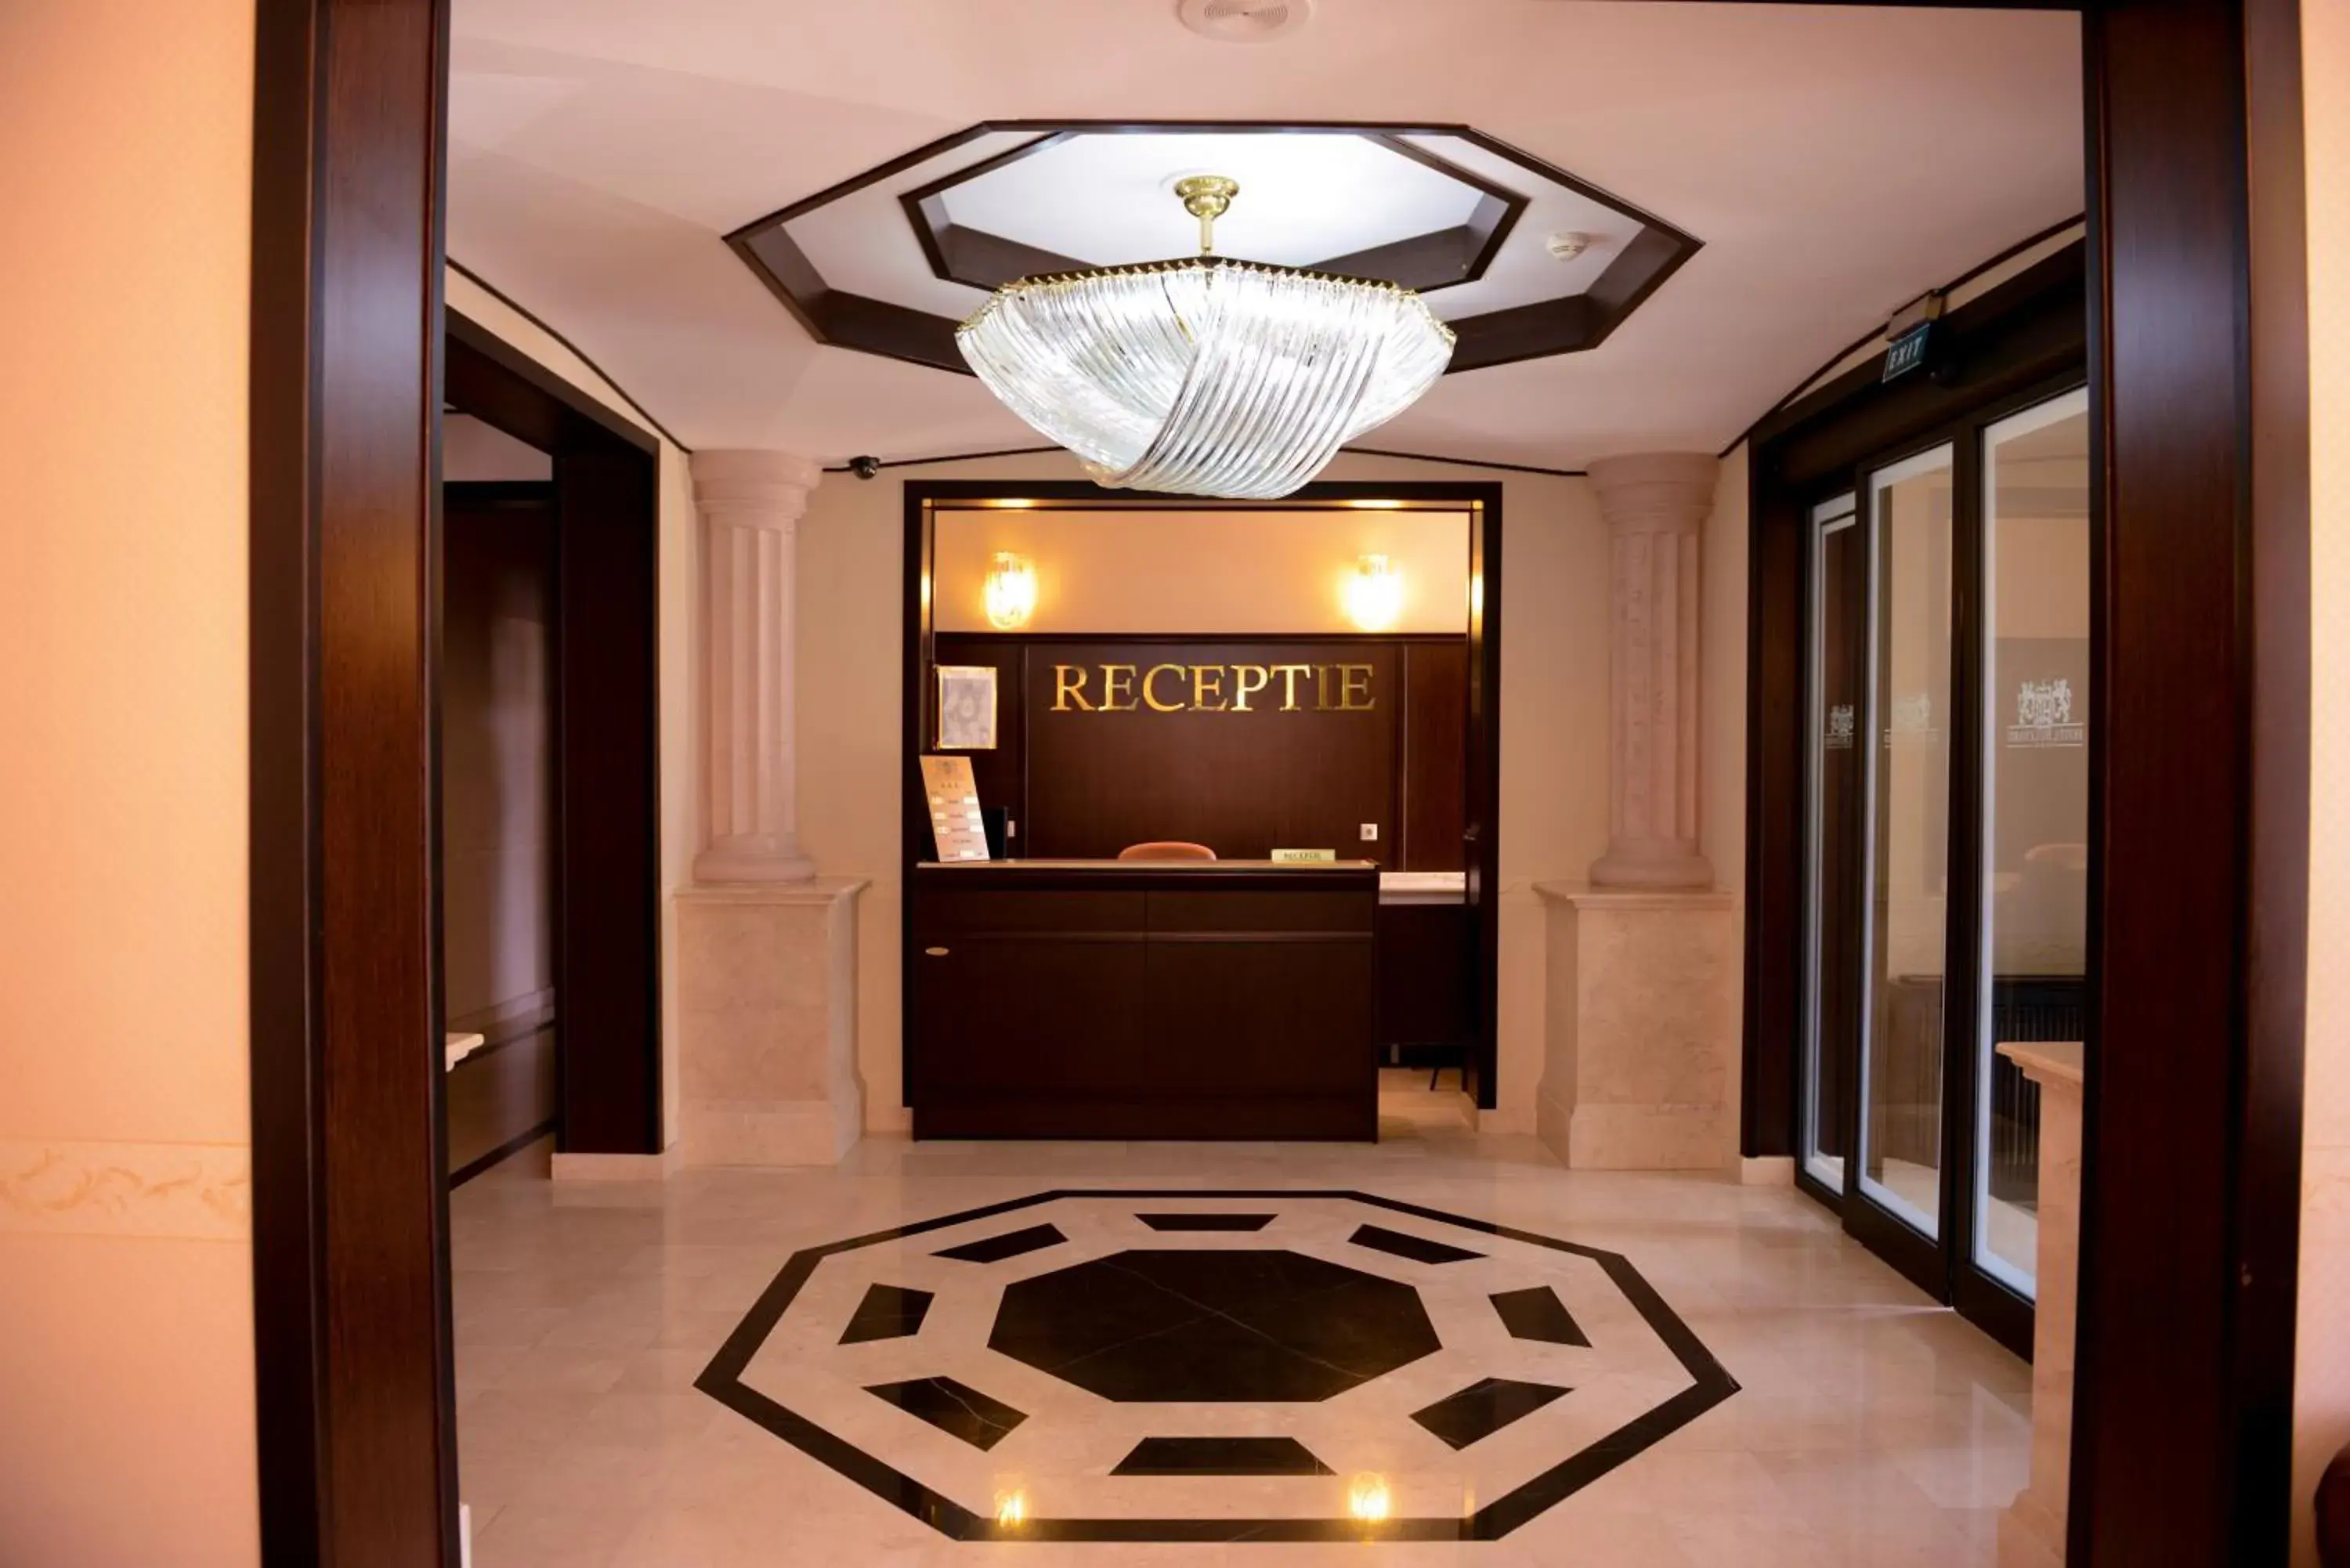 Lobby or reception, Lobby/Reception in Hotel Bulevard Predeal